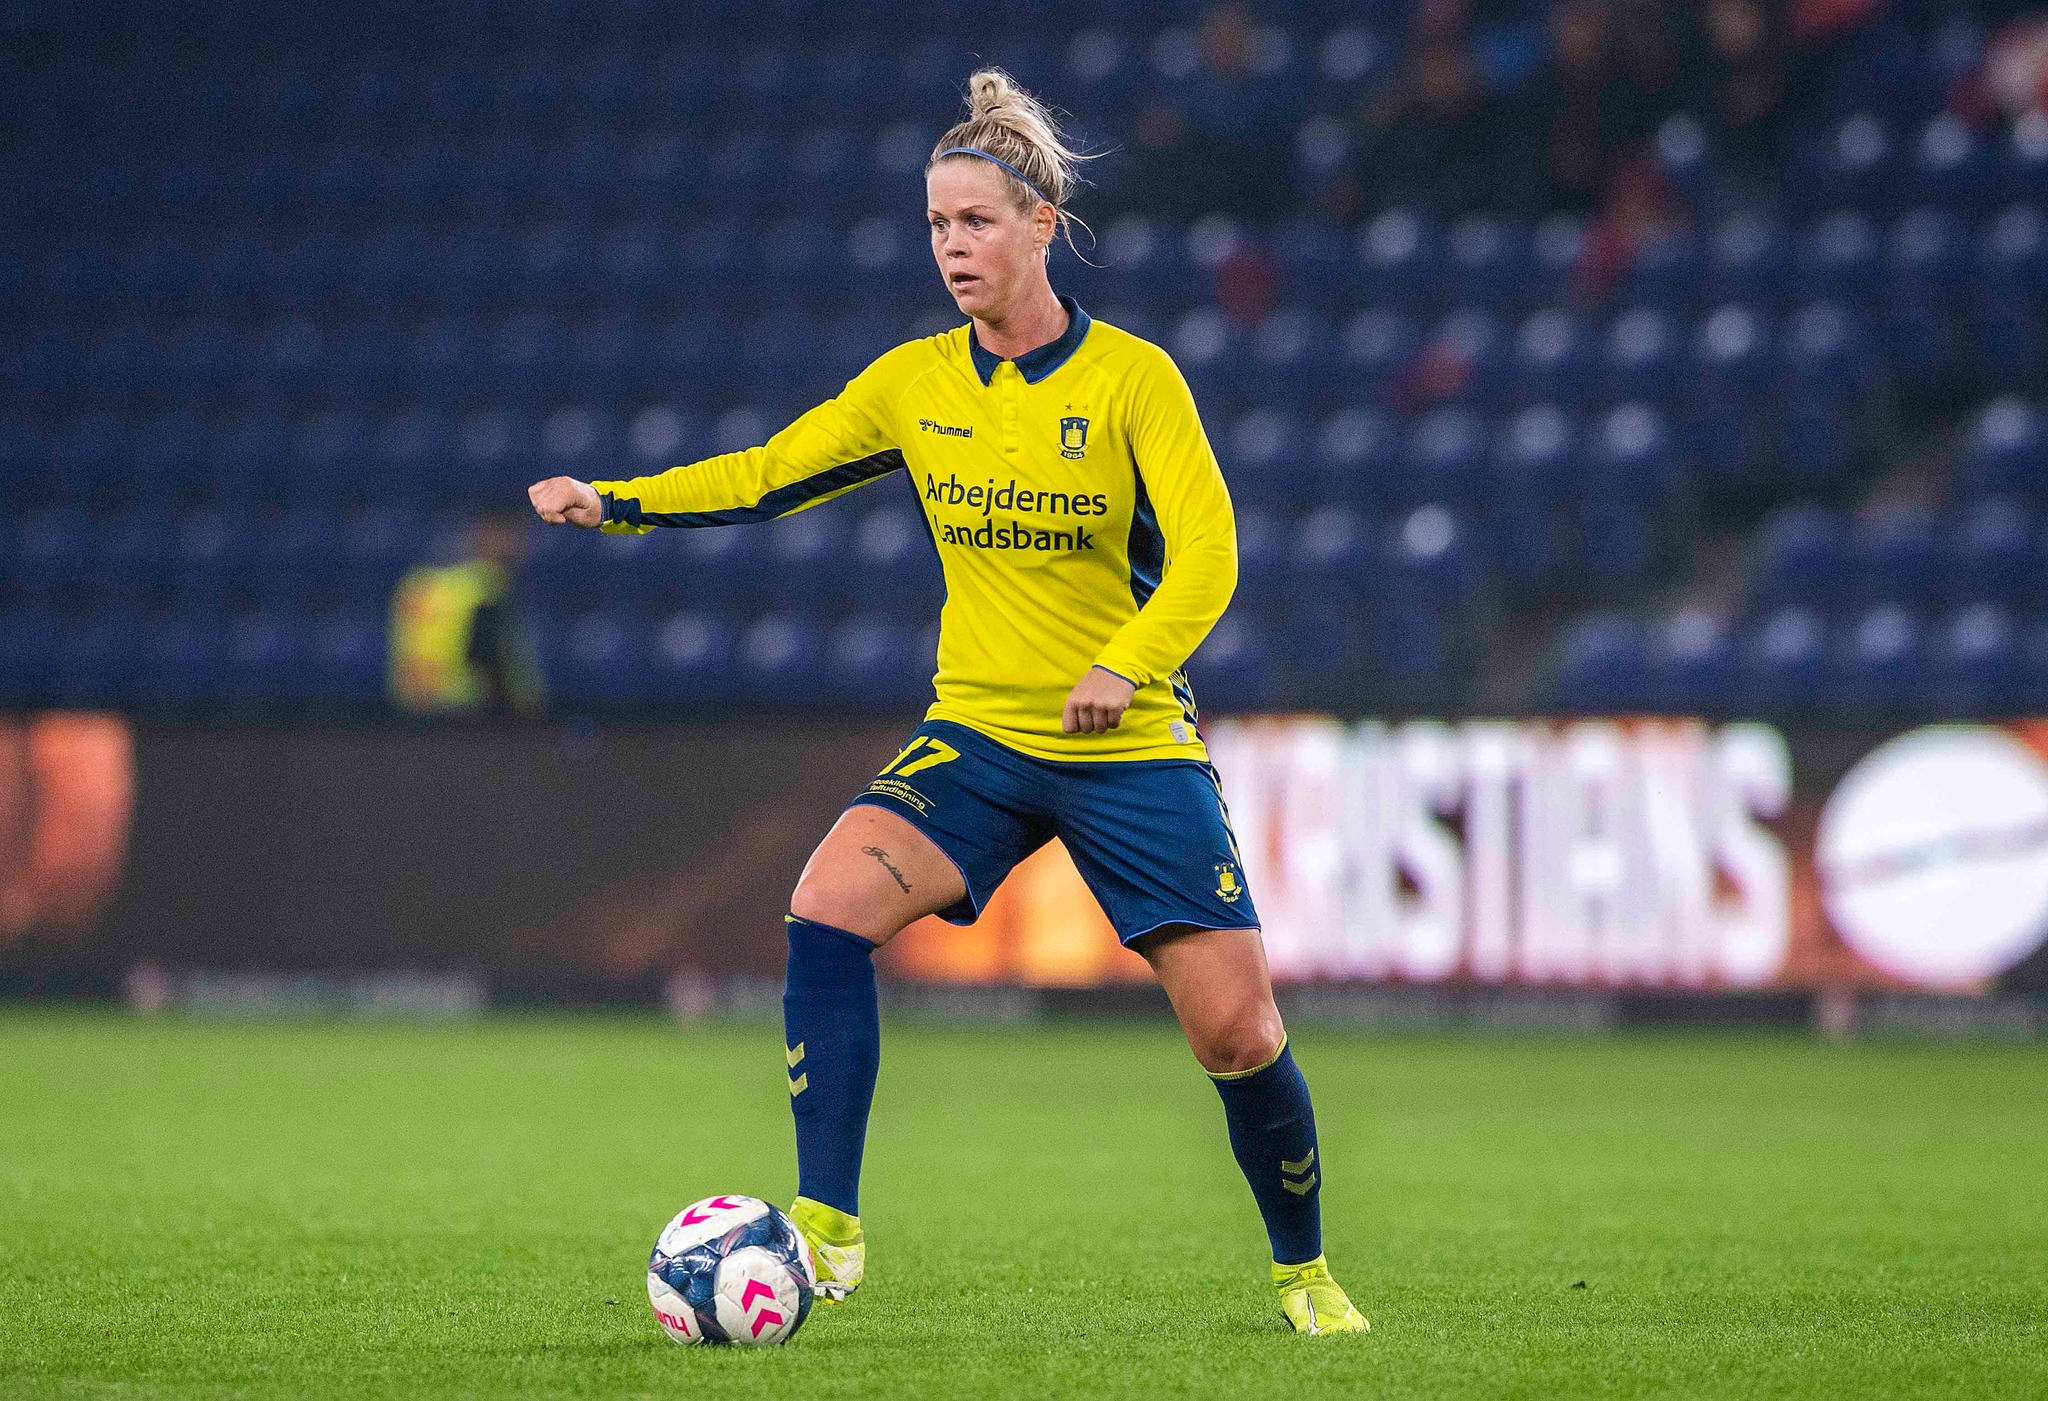 Julie i aktion på Brøndby Stadion, hvor kvinderne ved særlige lejligheder får lov at spille.